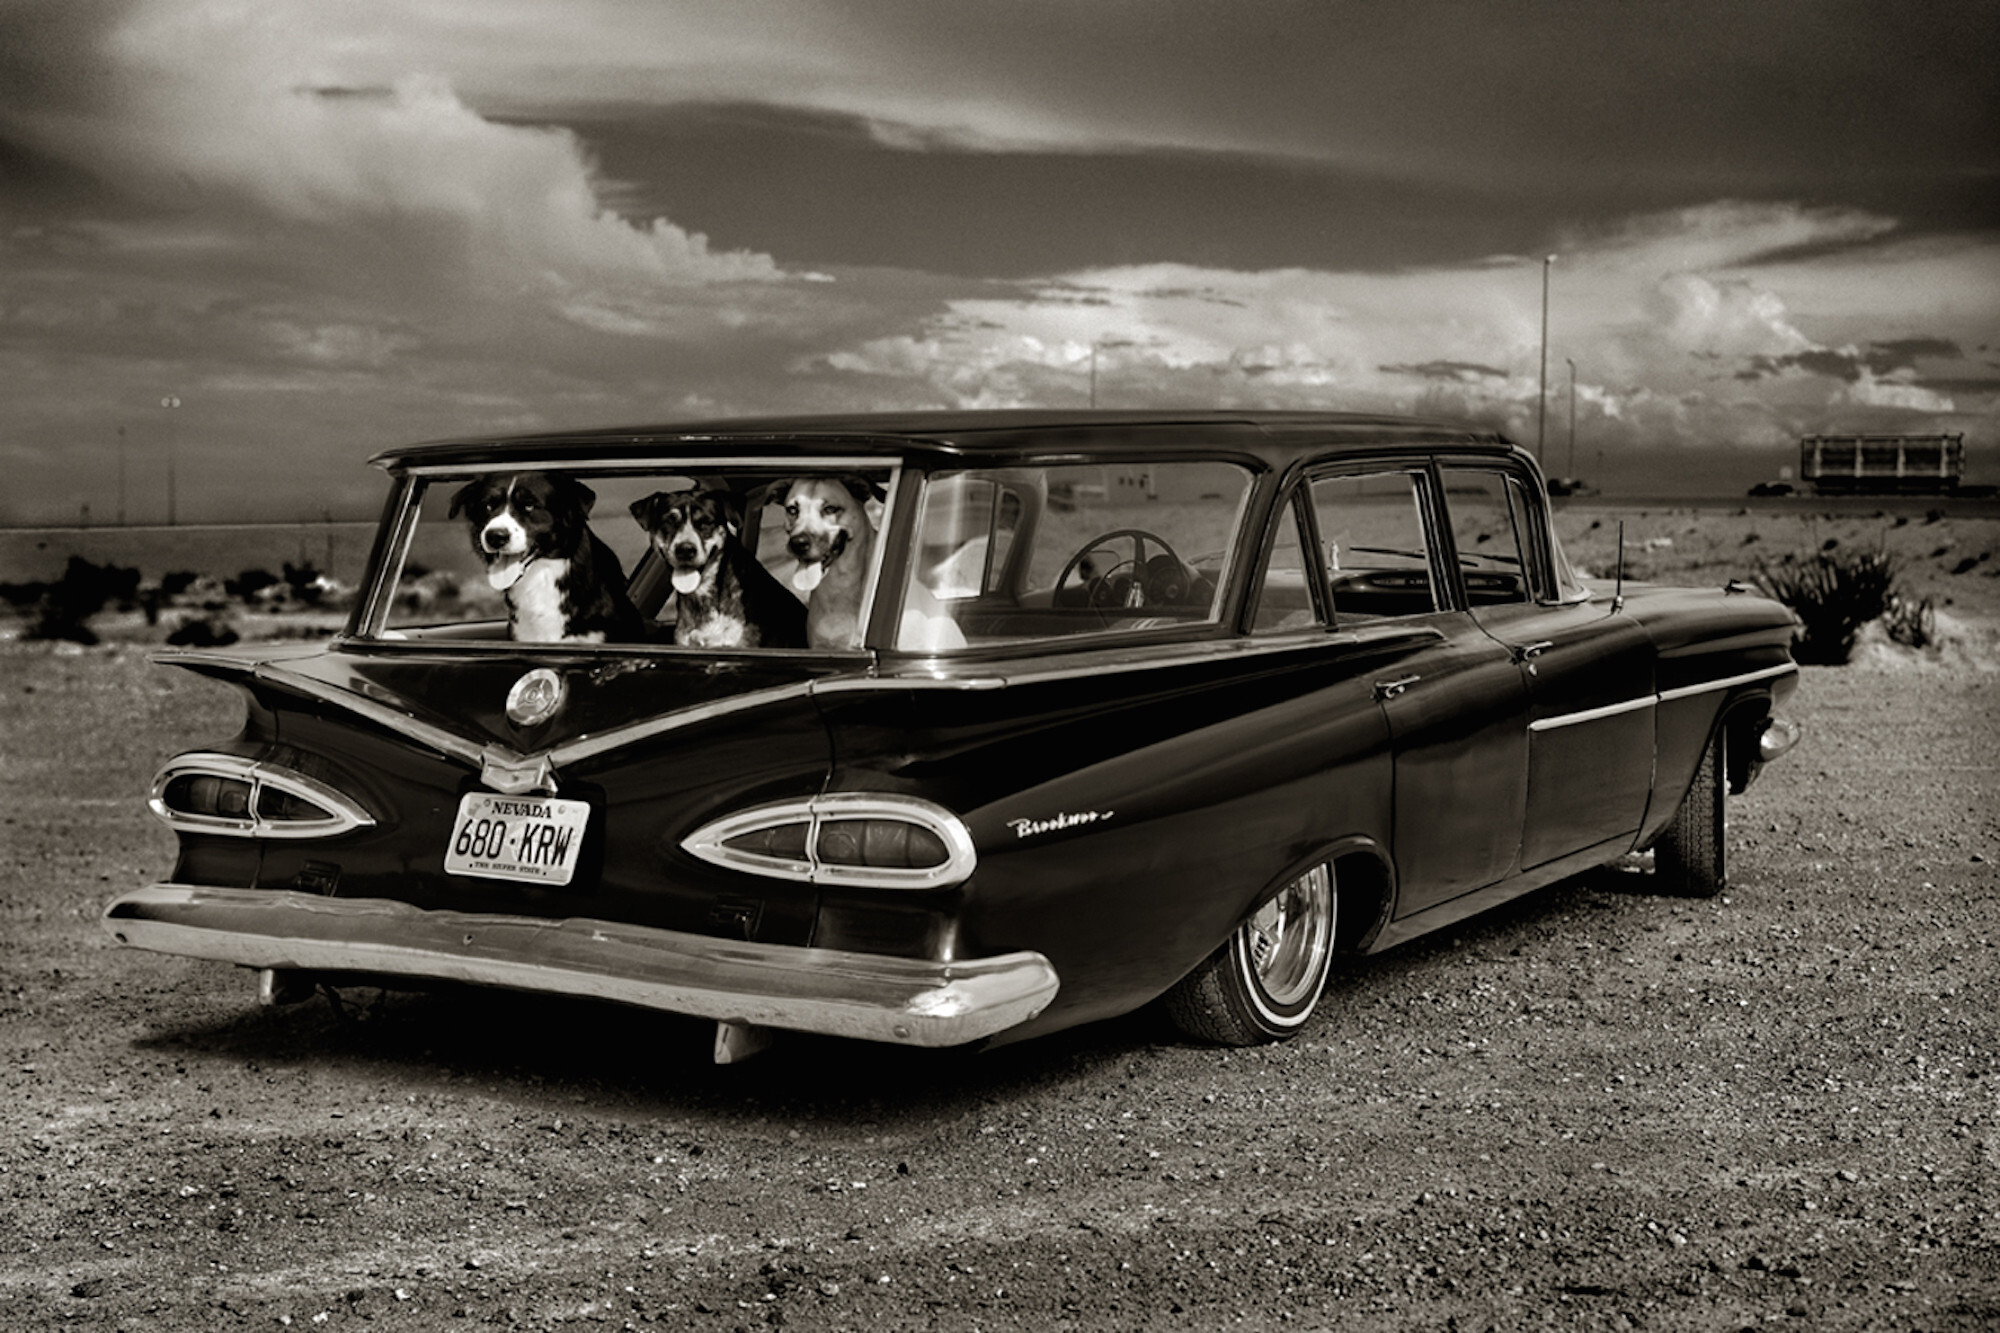 Dogsin Car, Лас-Вегас, 2000 год. Фотограф Альберт Уотсон